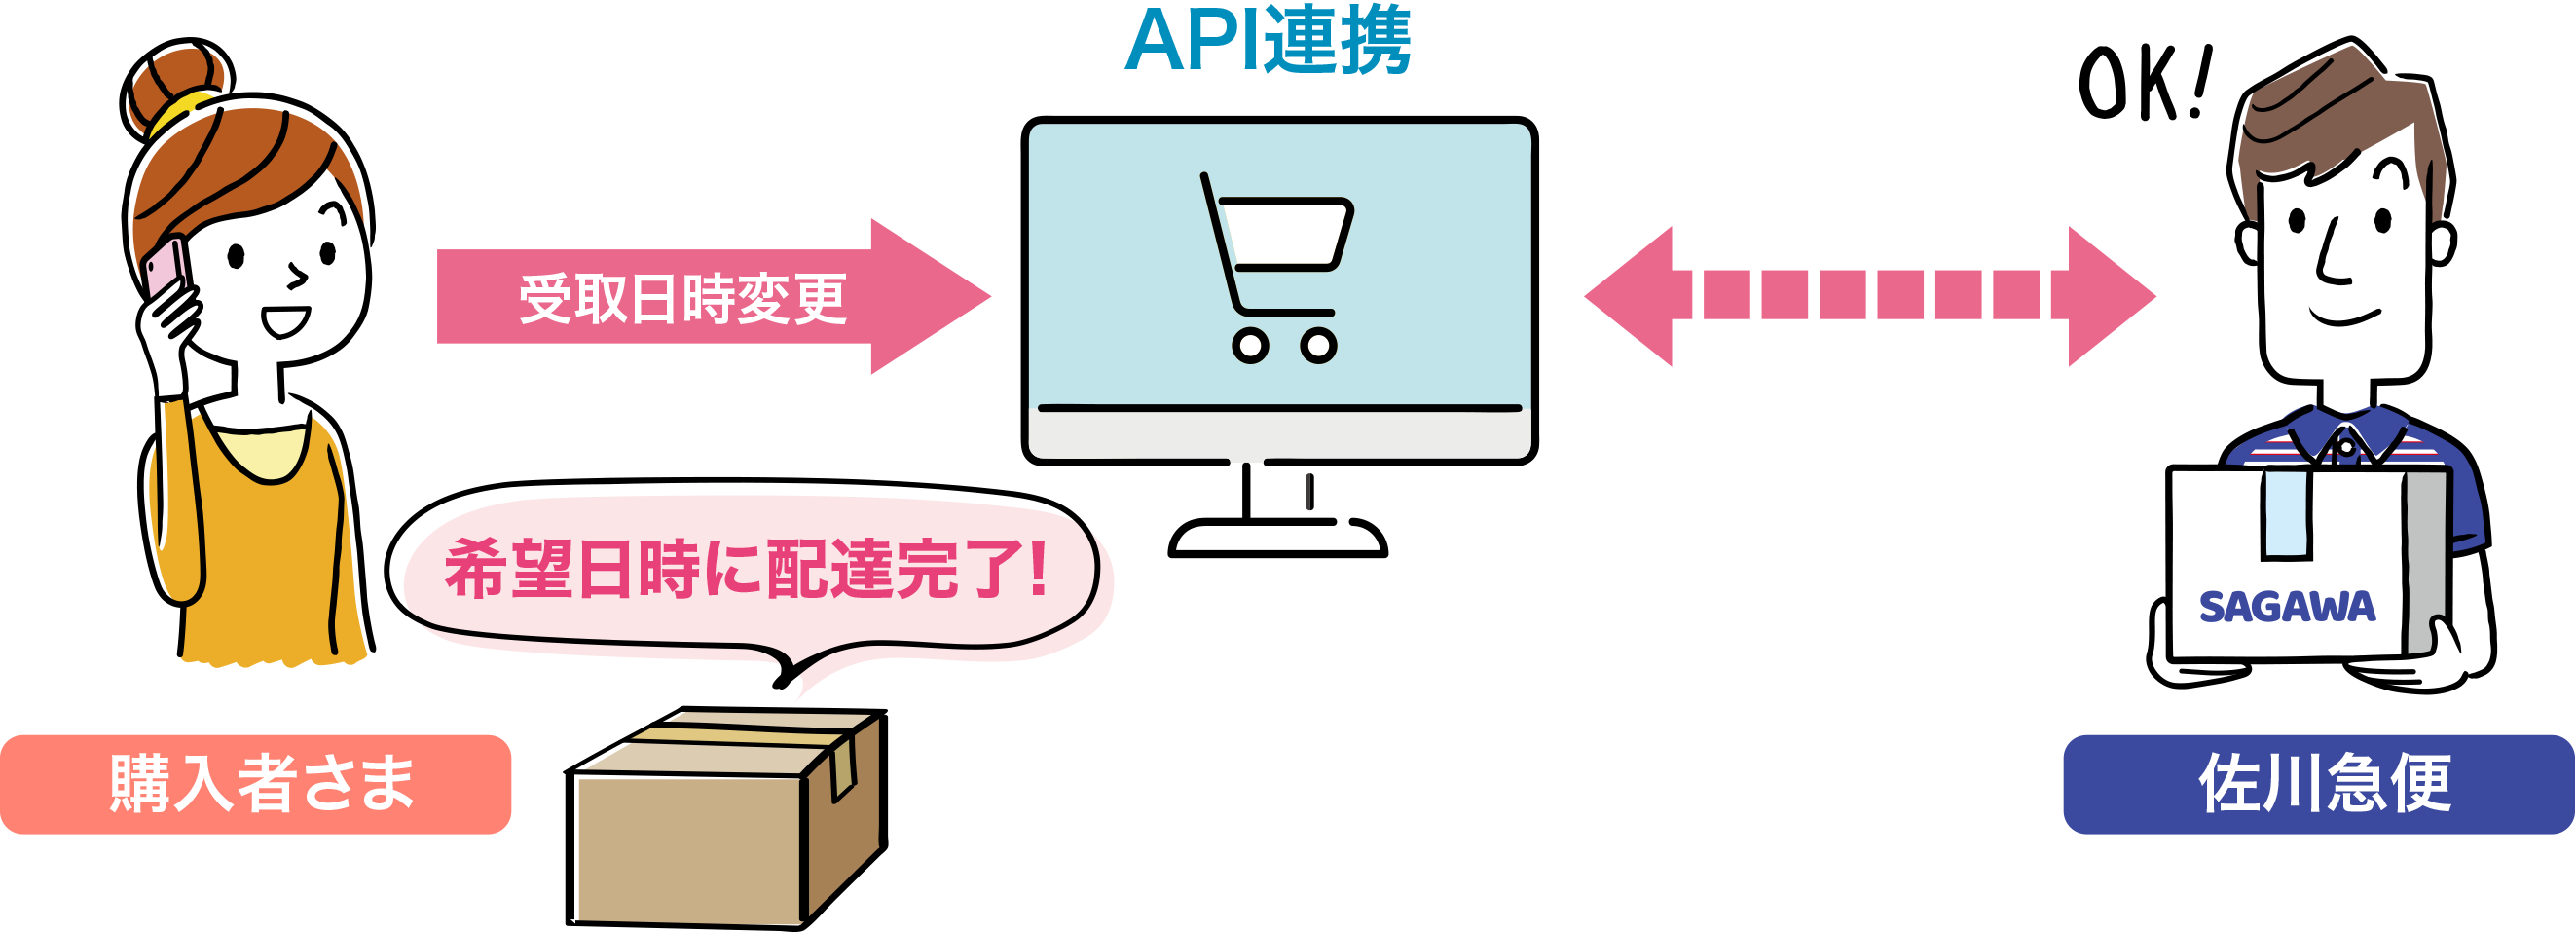 購入者さまが変更した受取日時をAPIで佐川急便へ連携するため、商品のスムーズな受け渡しが可能となります。